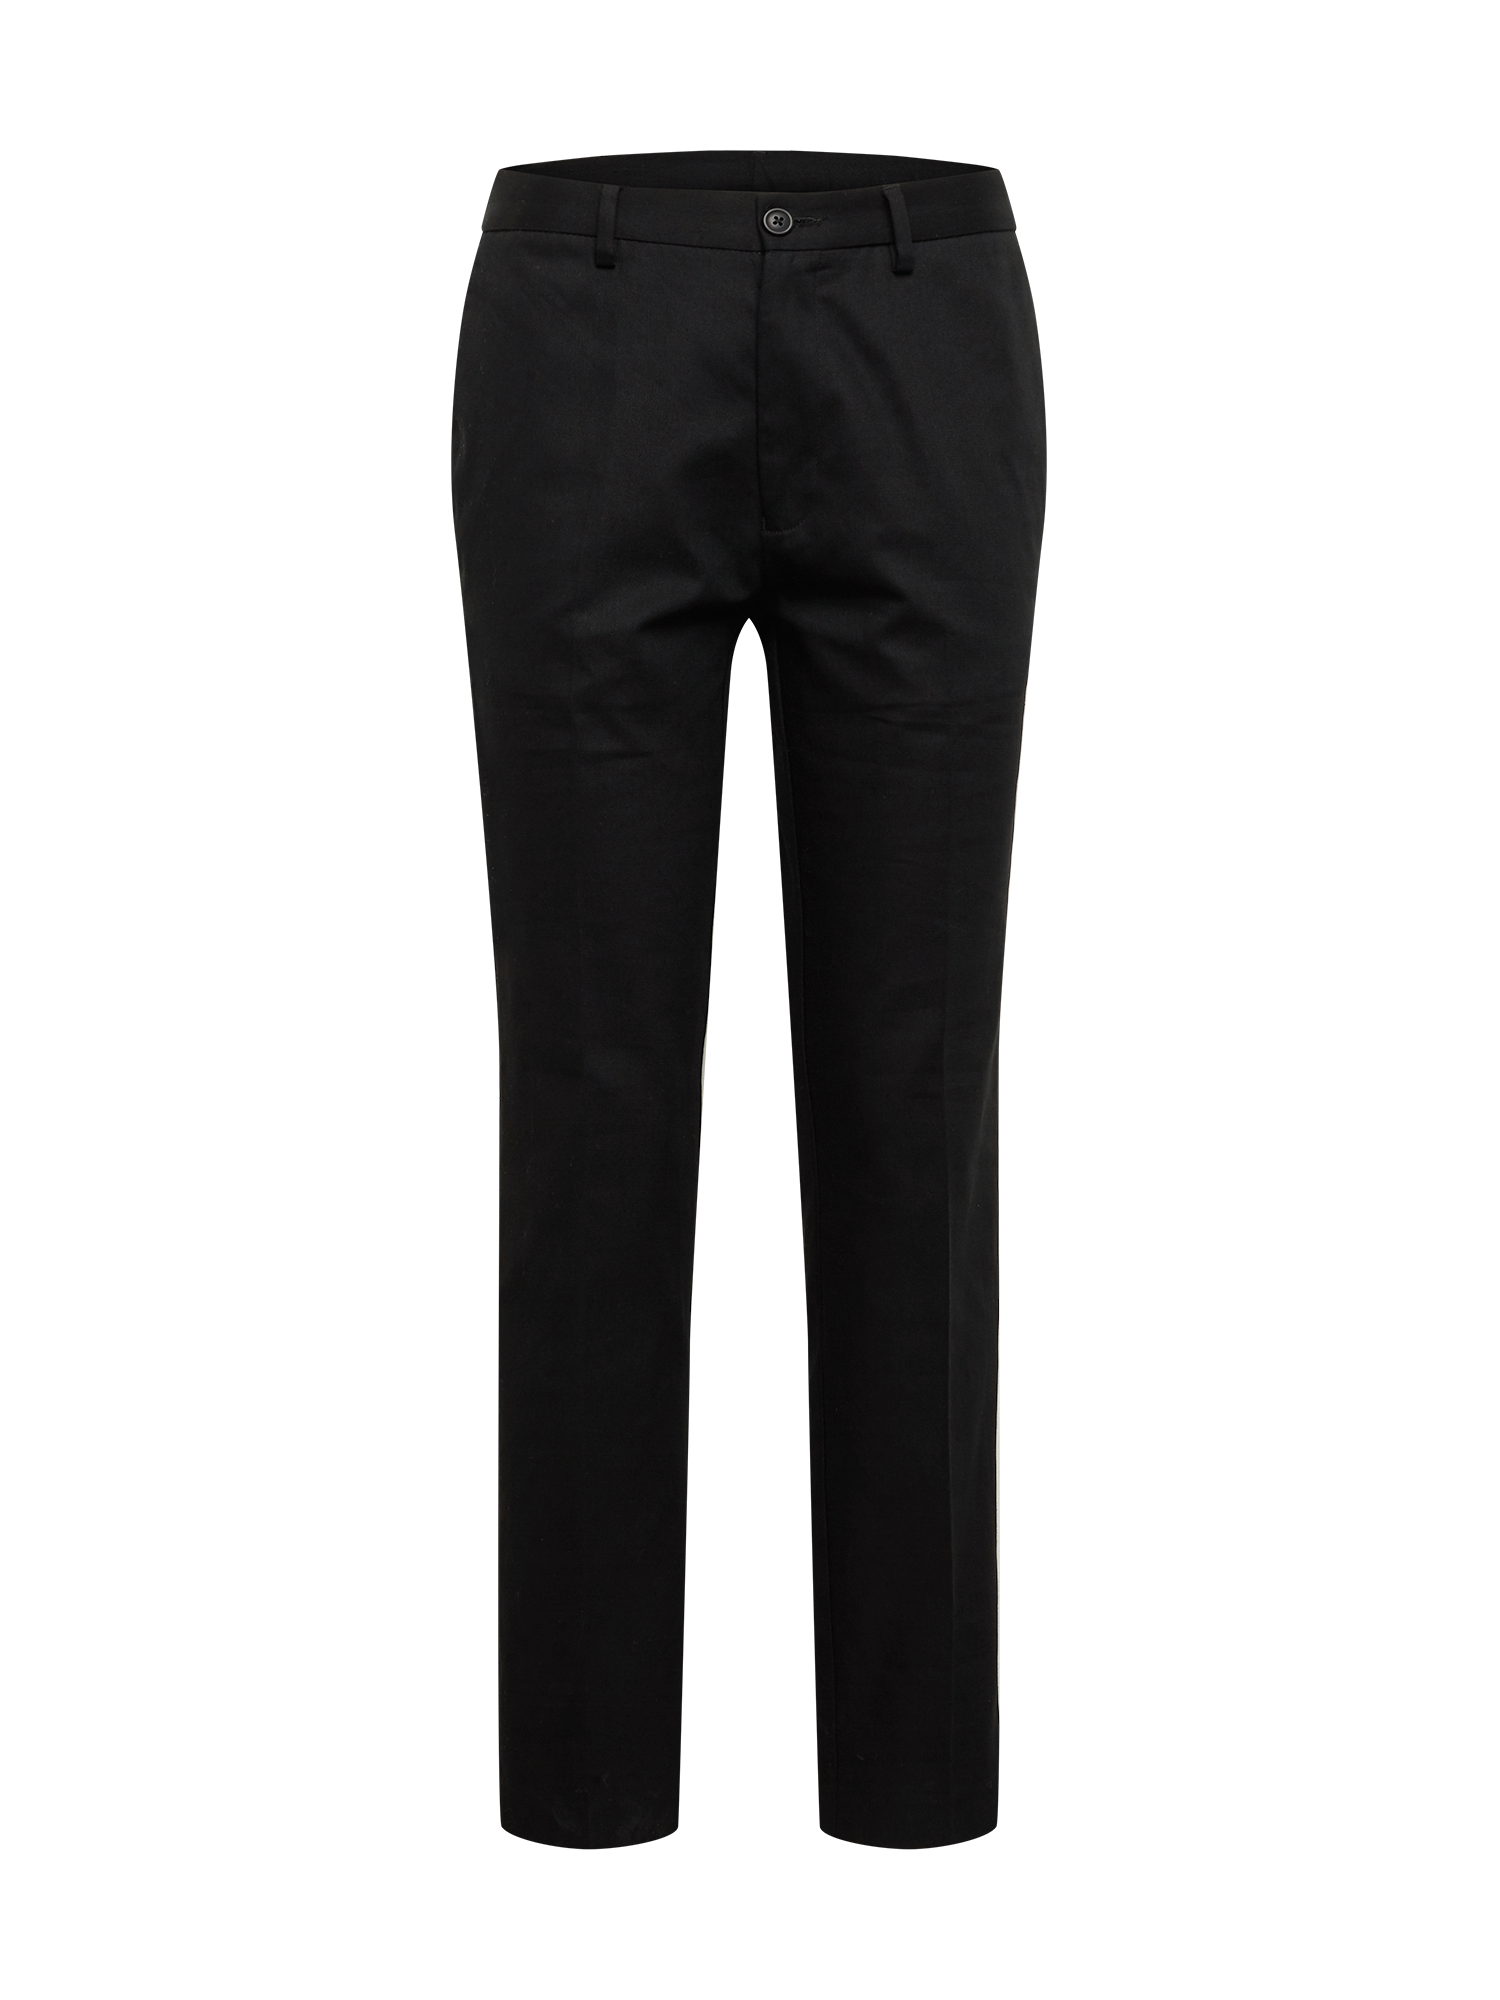 BURTON MENSWEAR LONDON Spodnie w kolorze Czarnym 